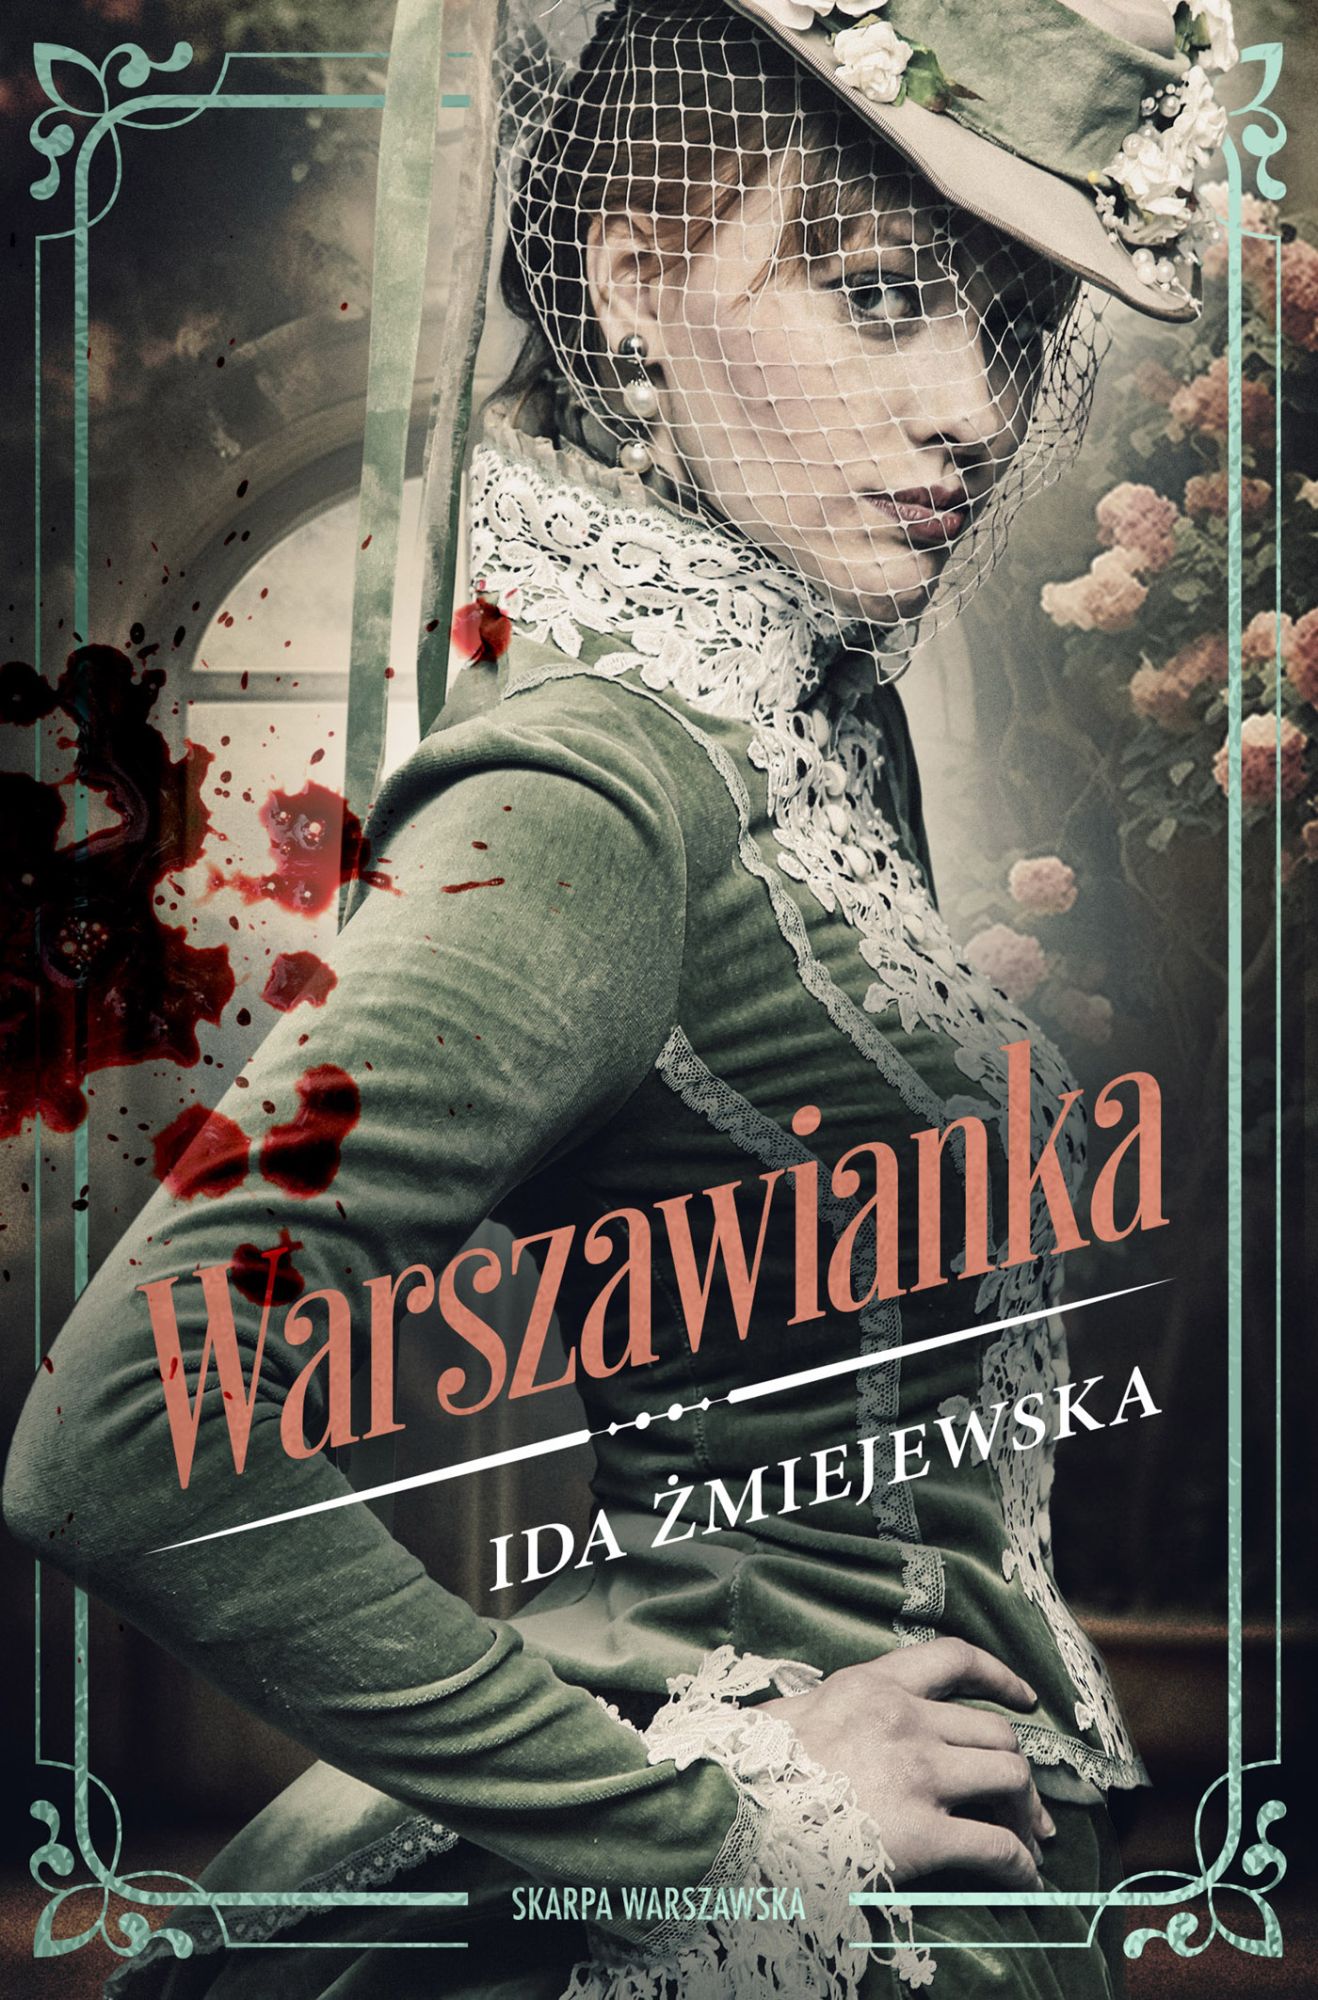 Warszawianka, Ida Żmiejewska